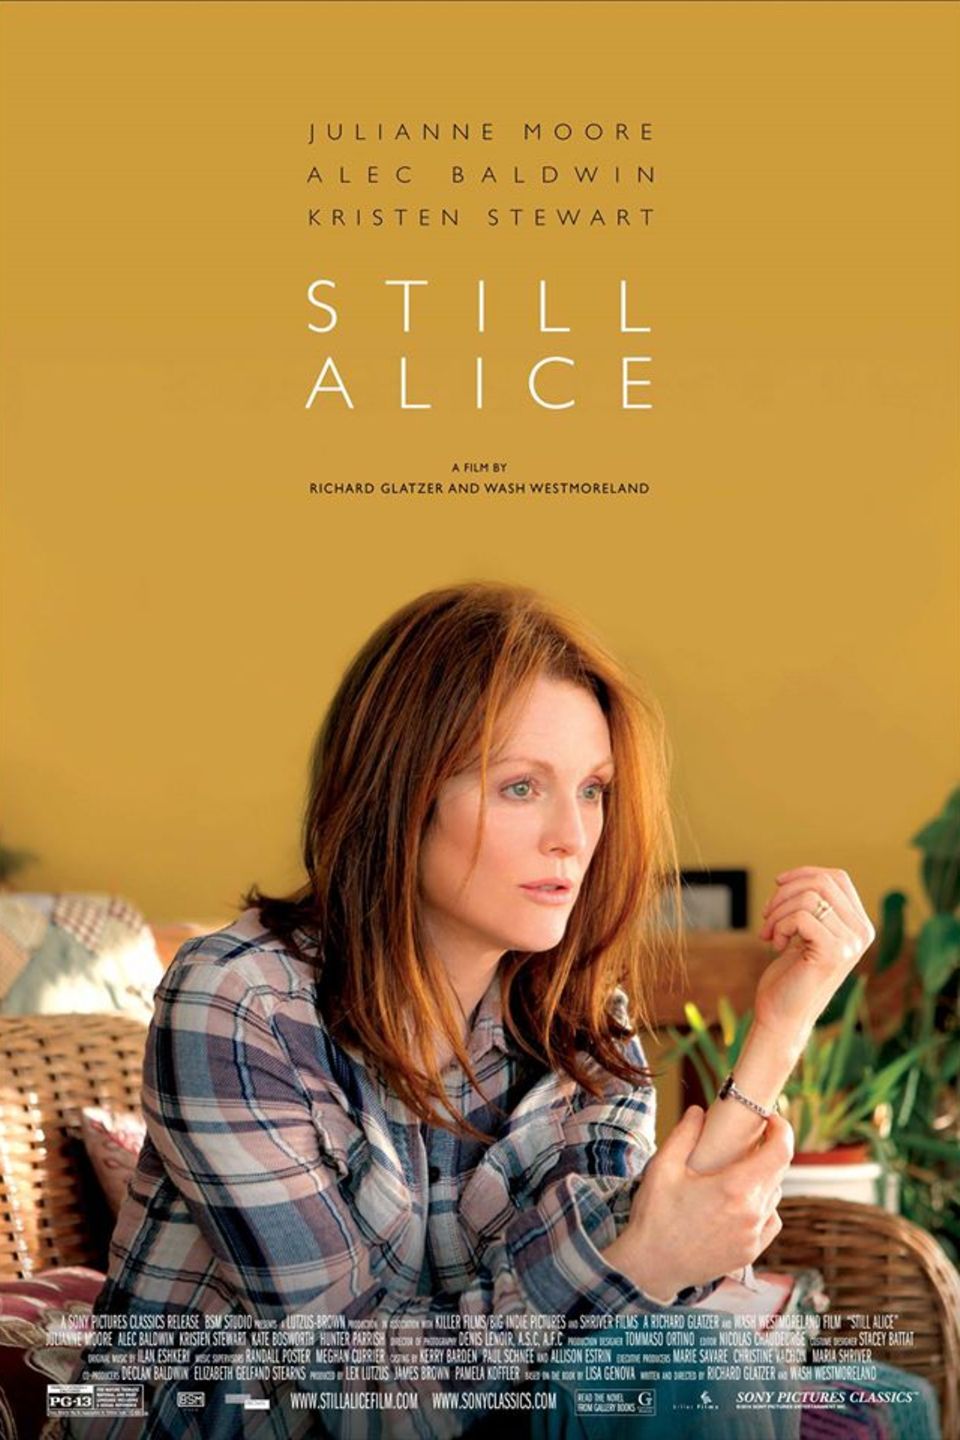 Juliane Moore in "Still Alice".